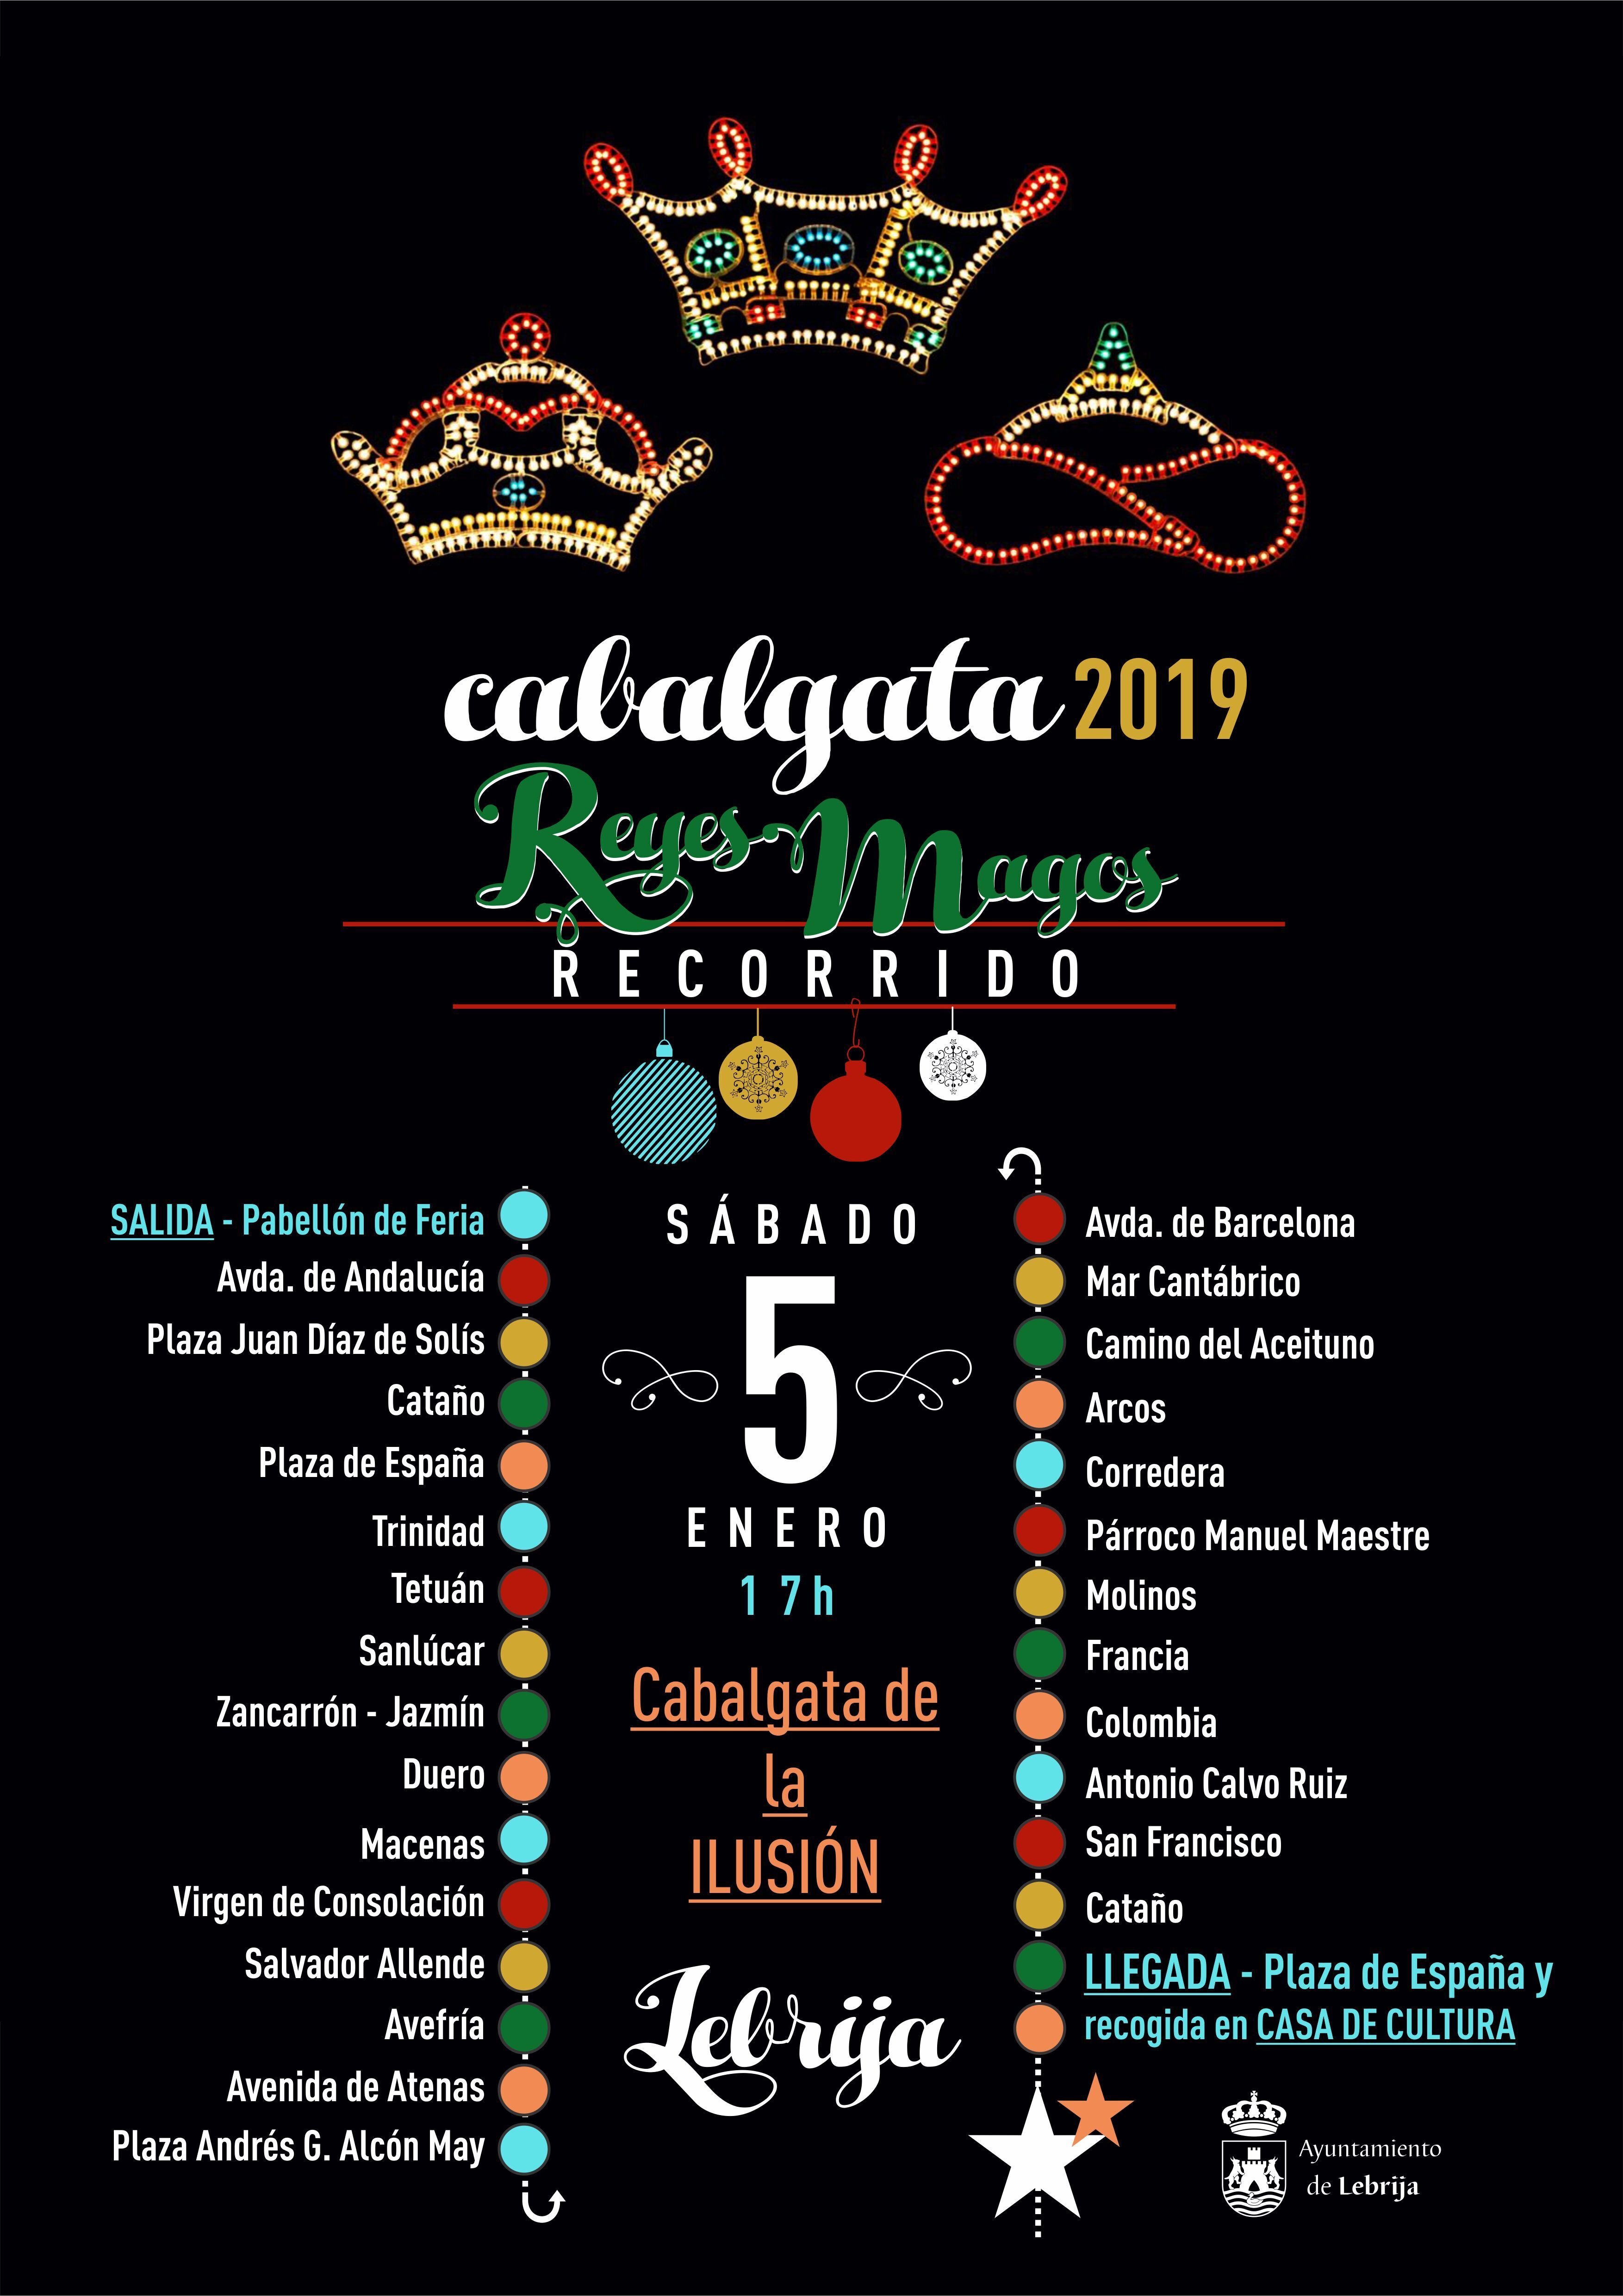 RECORRIDO CABALGATA 2019